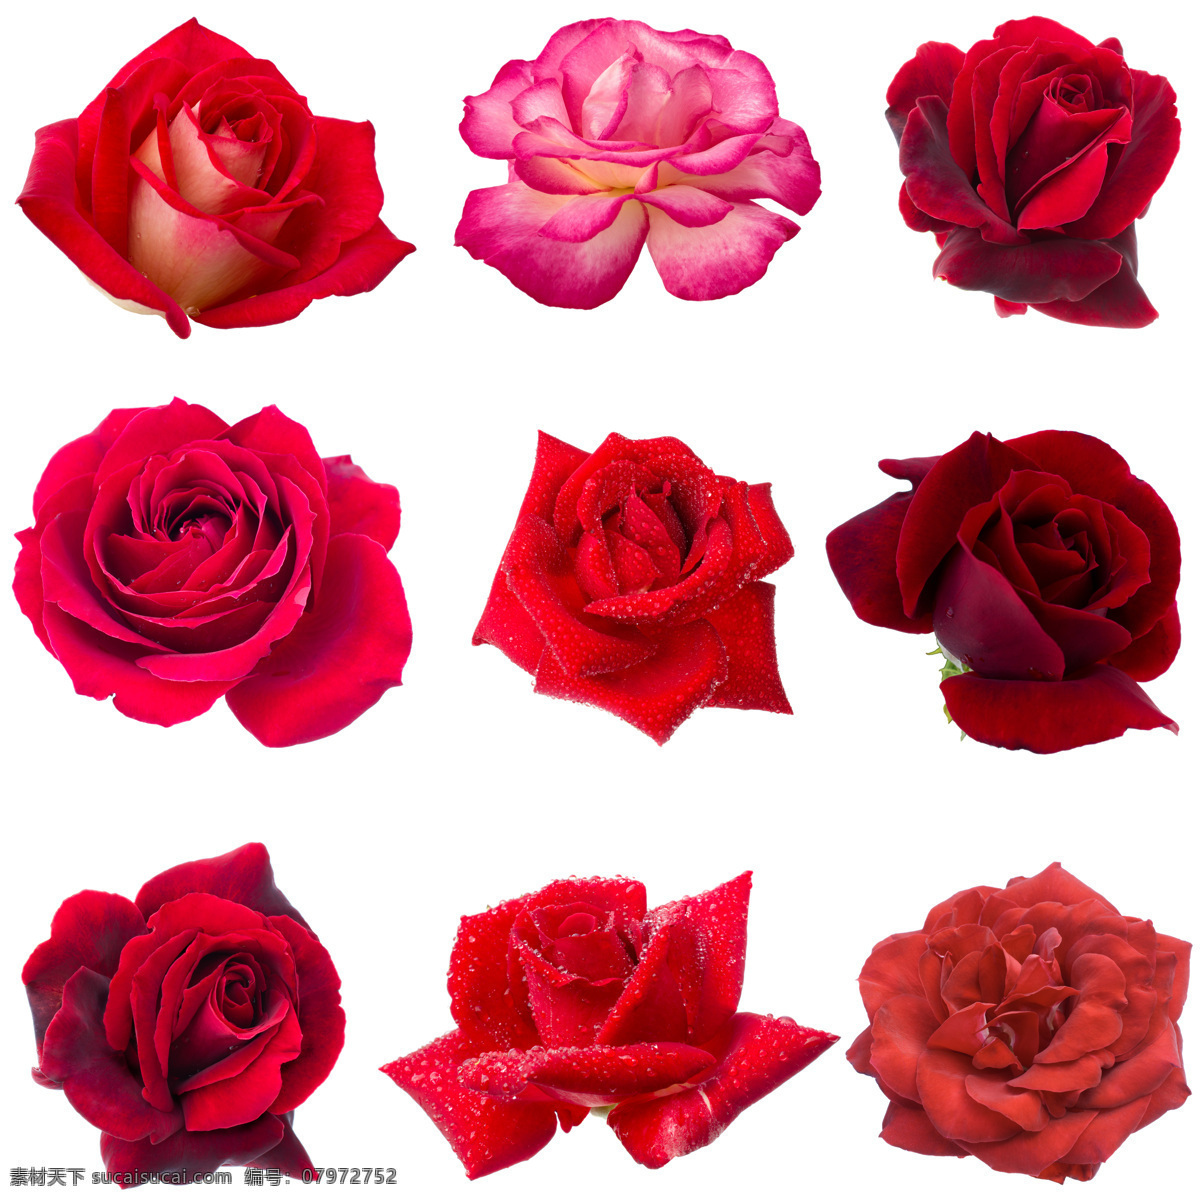 各种 品种 玫瑰花 情人节 植物花朵 美丽鲜花 漂亮花朵 花卉 鲜花摄影 花草树木 生物世界 白色